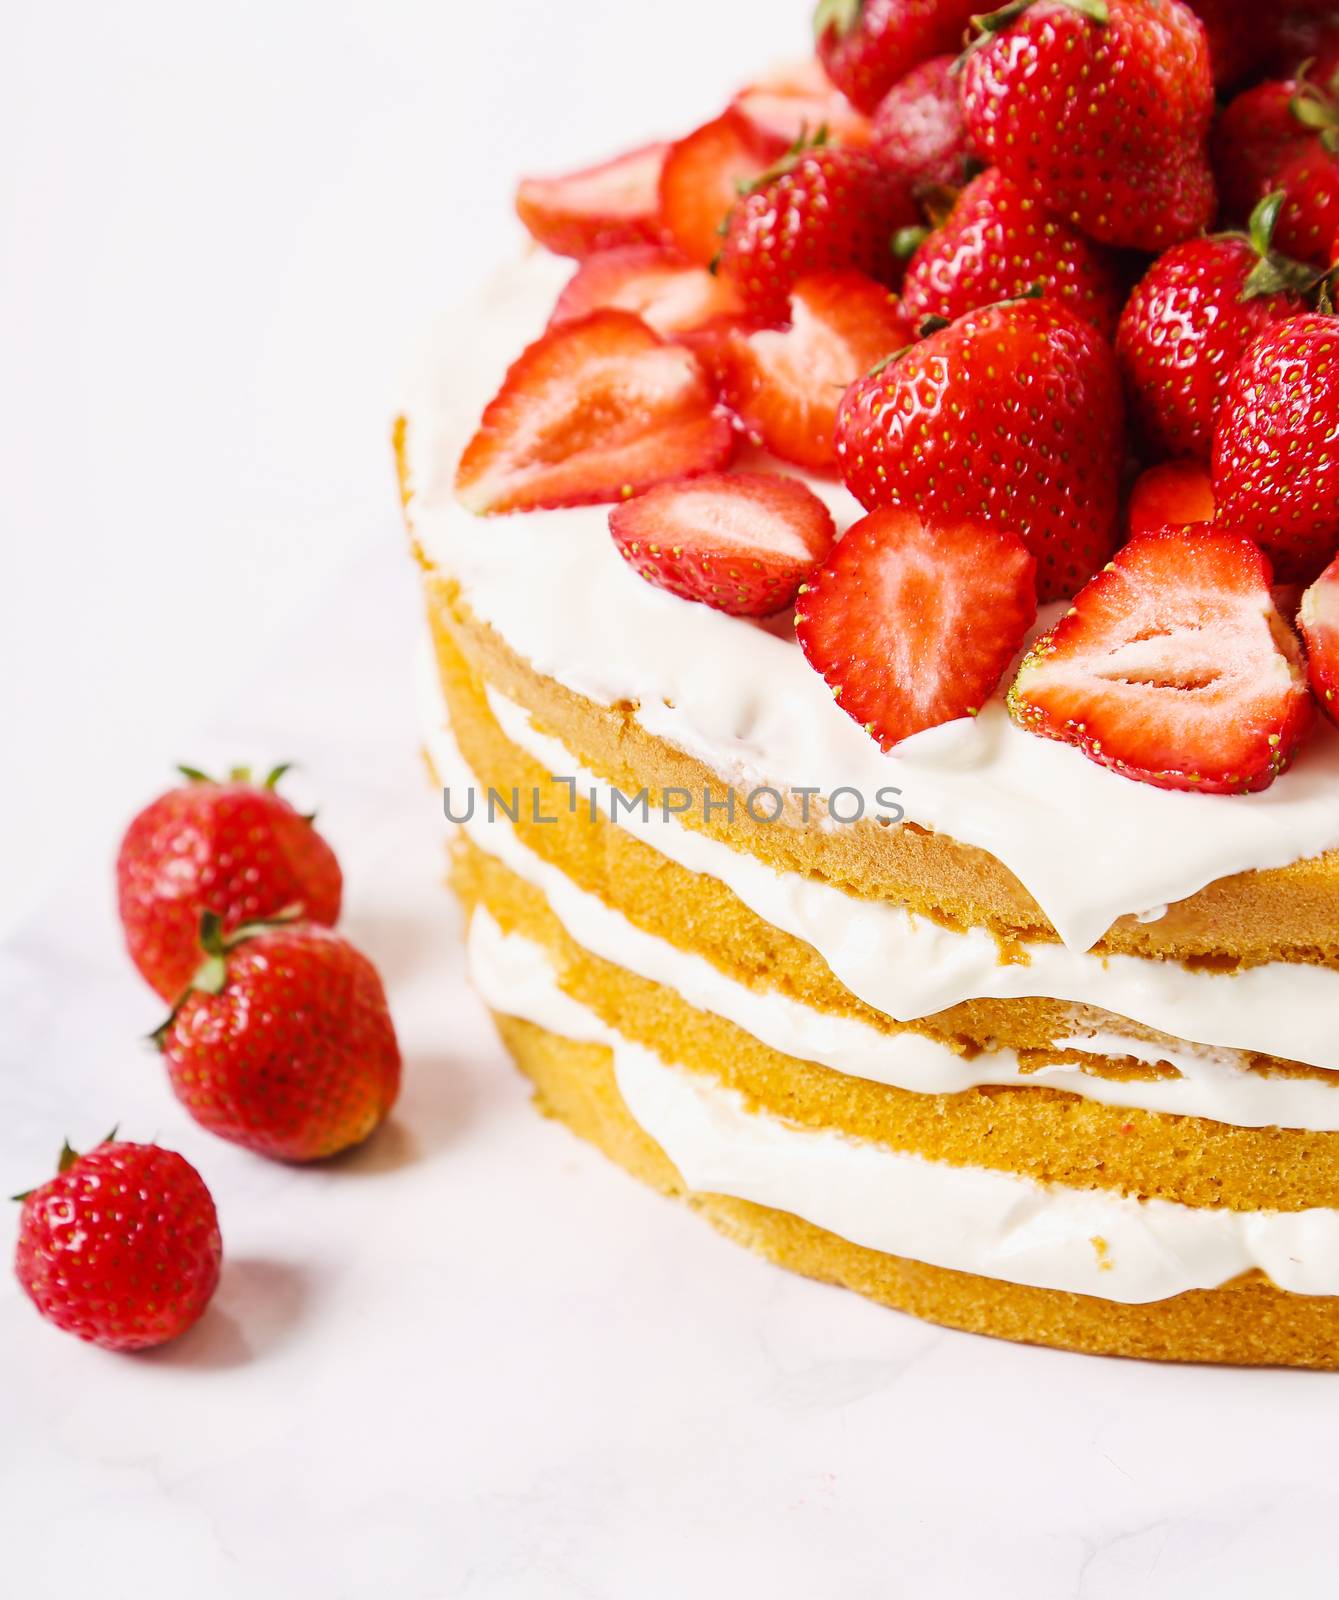 Strawberry cake by rufatjumali